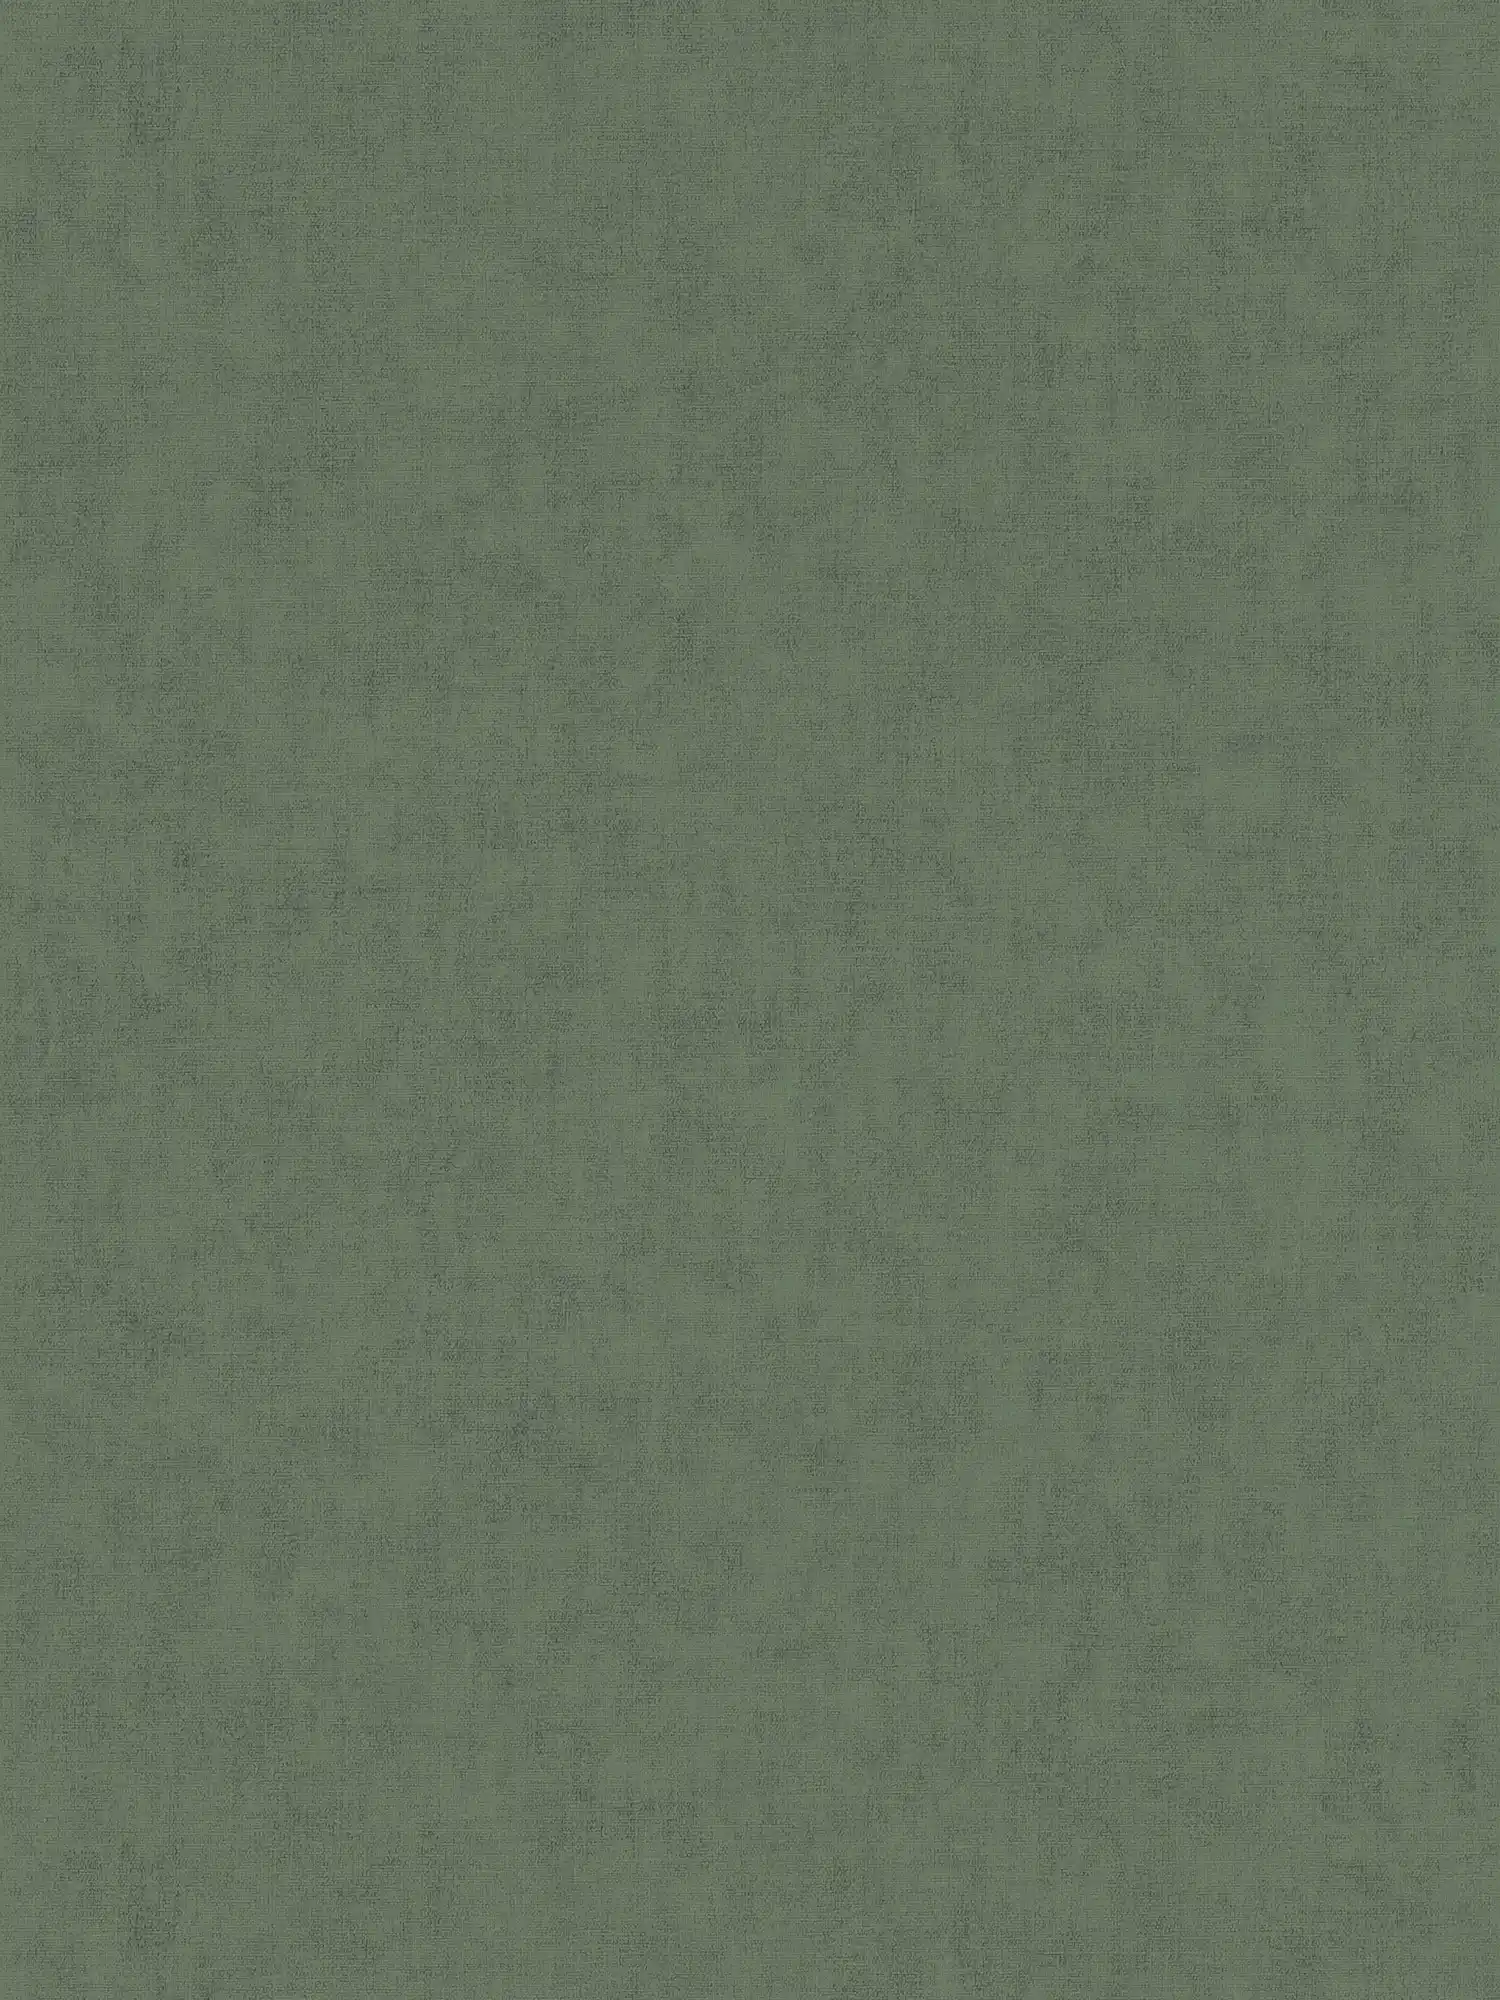 Non-woven wallpaper textile look Scandinavian style - grey, brown
